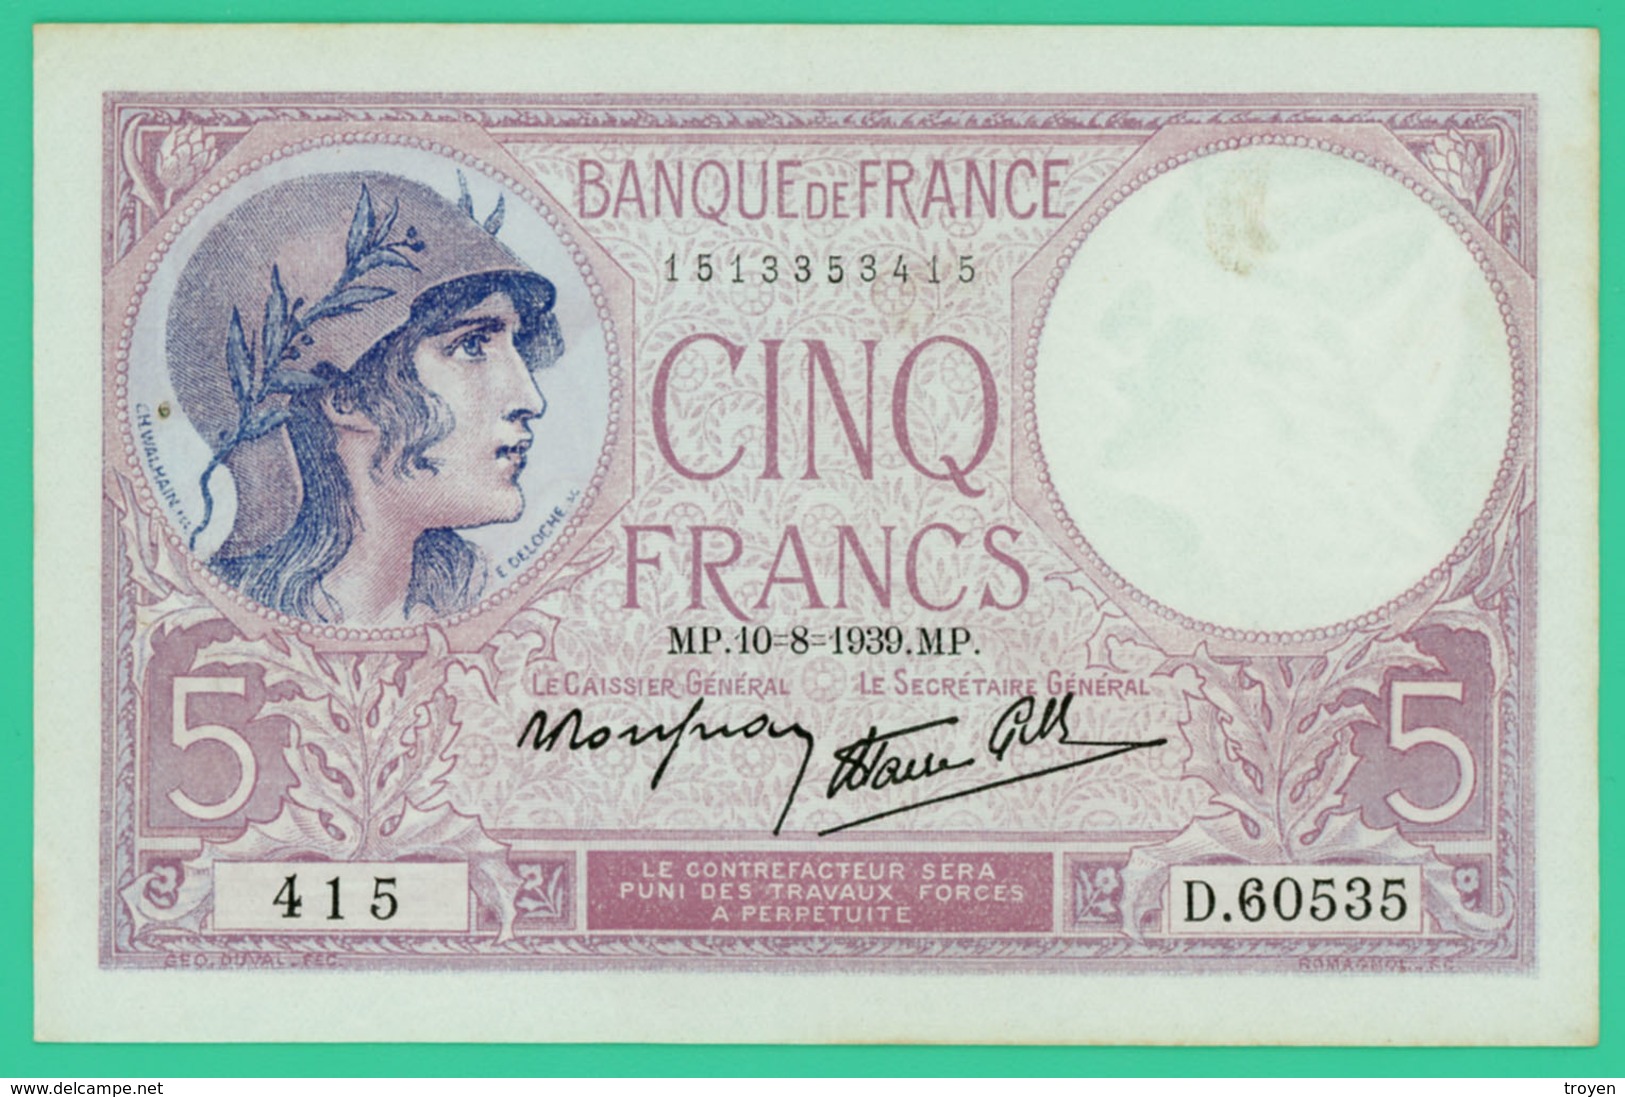 5 Francs - Violet - France - N°. D.60535 415 - 10-8-1939 MP -  Sup  - - 5 F 1917-1940 ''Violet''